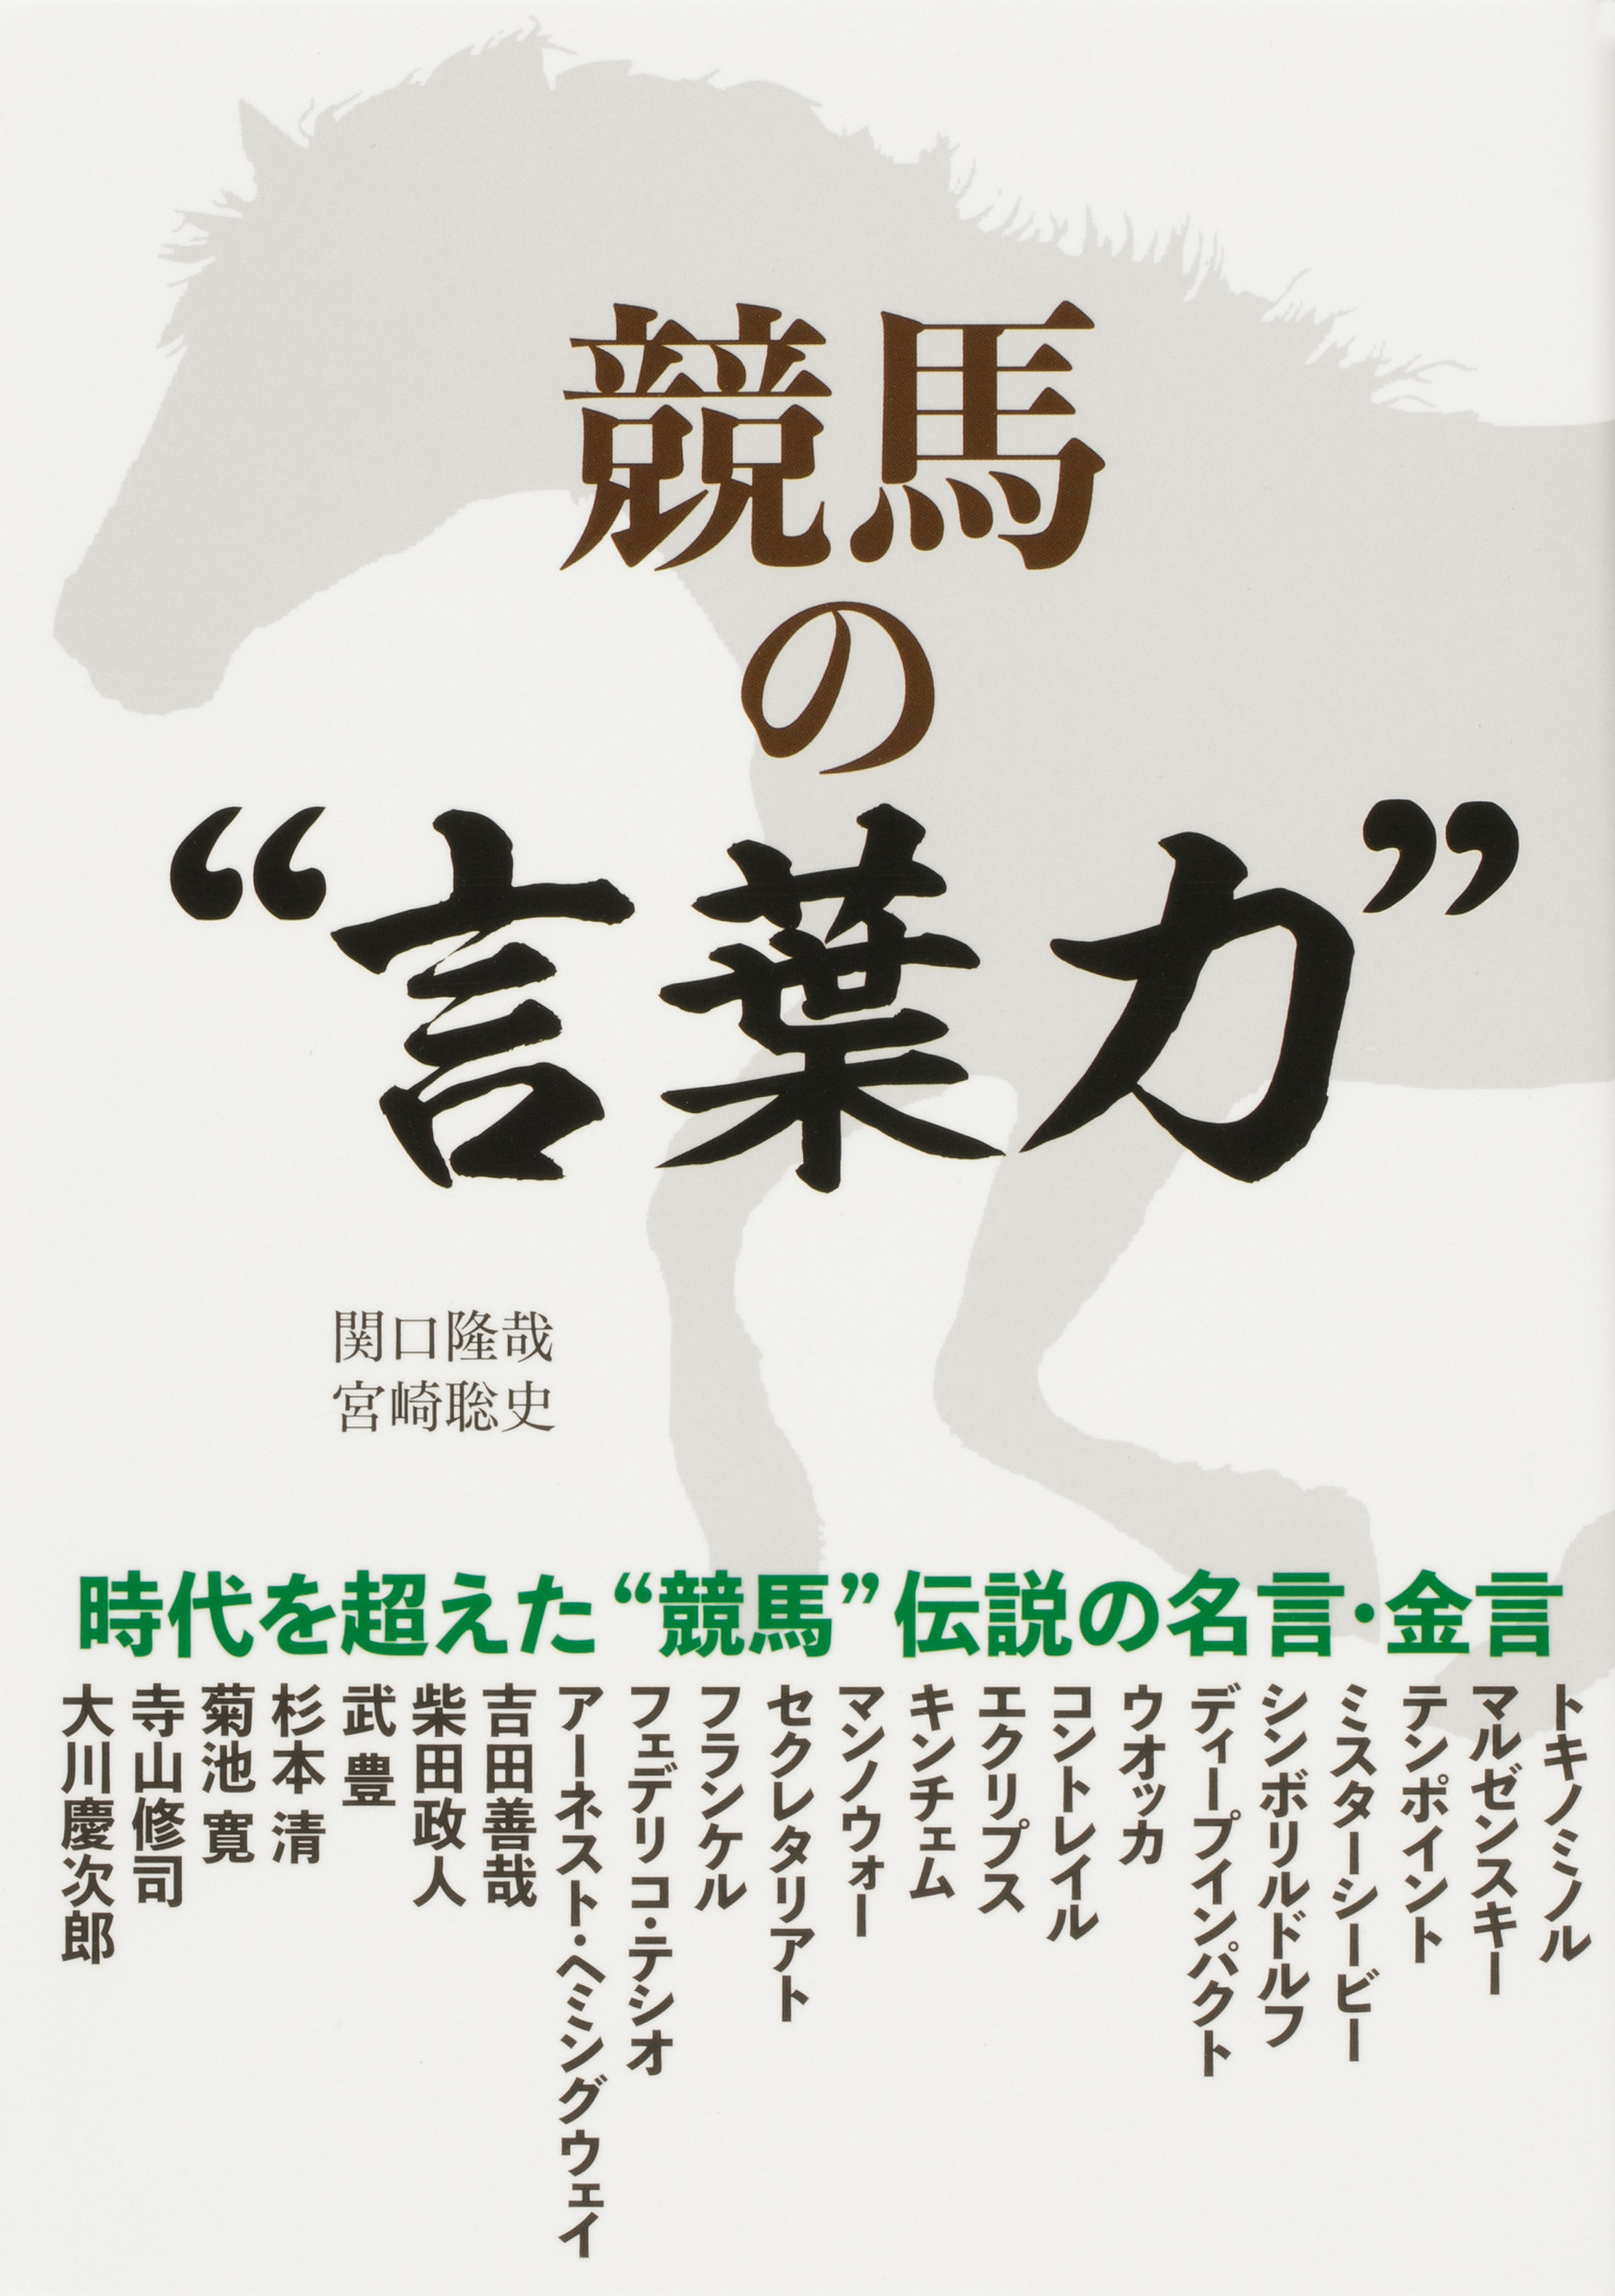 Kadokawa公式ショップ 競馬の 言葉力 本 カドカワストア オリジナル特典 本 関連グッズ Blu Ray Dvd Cd